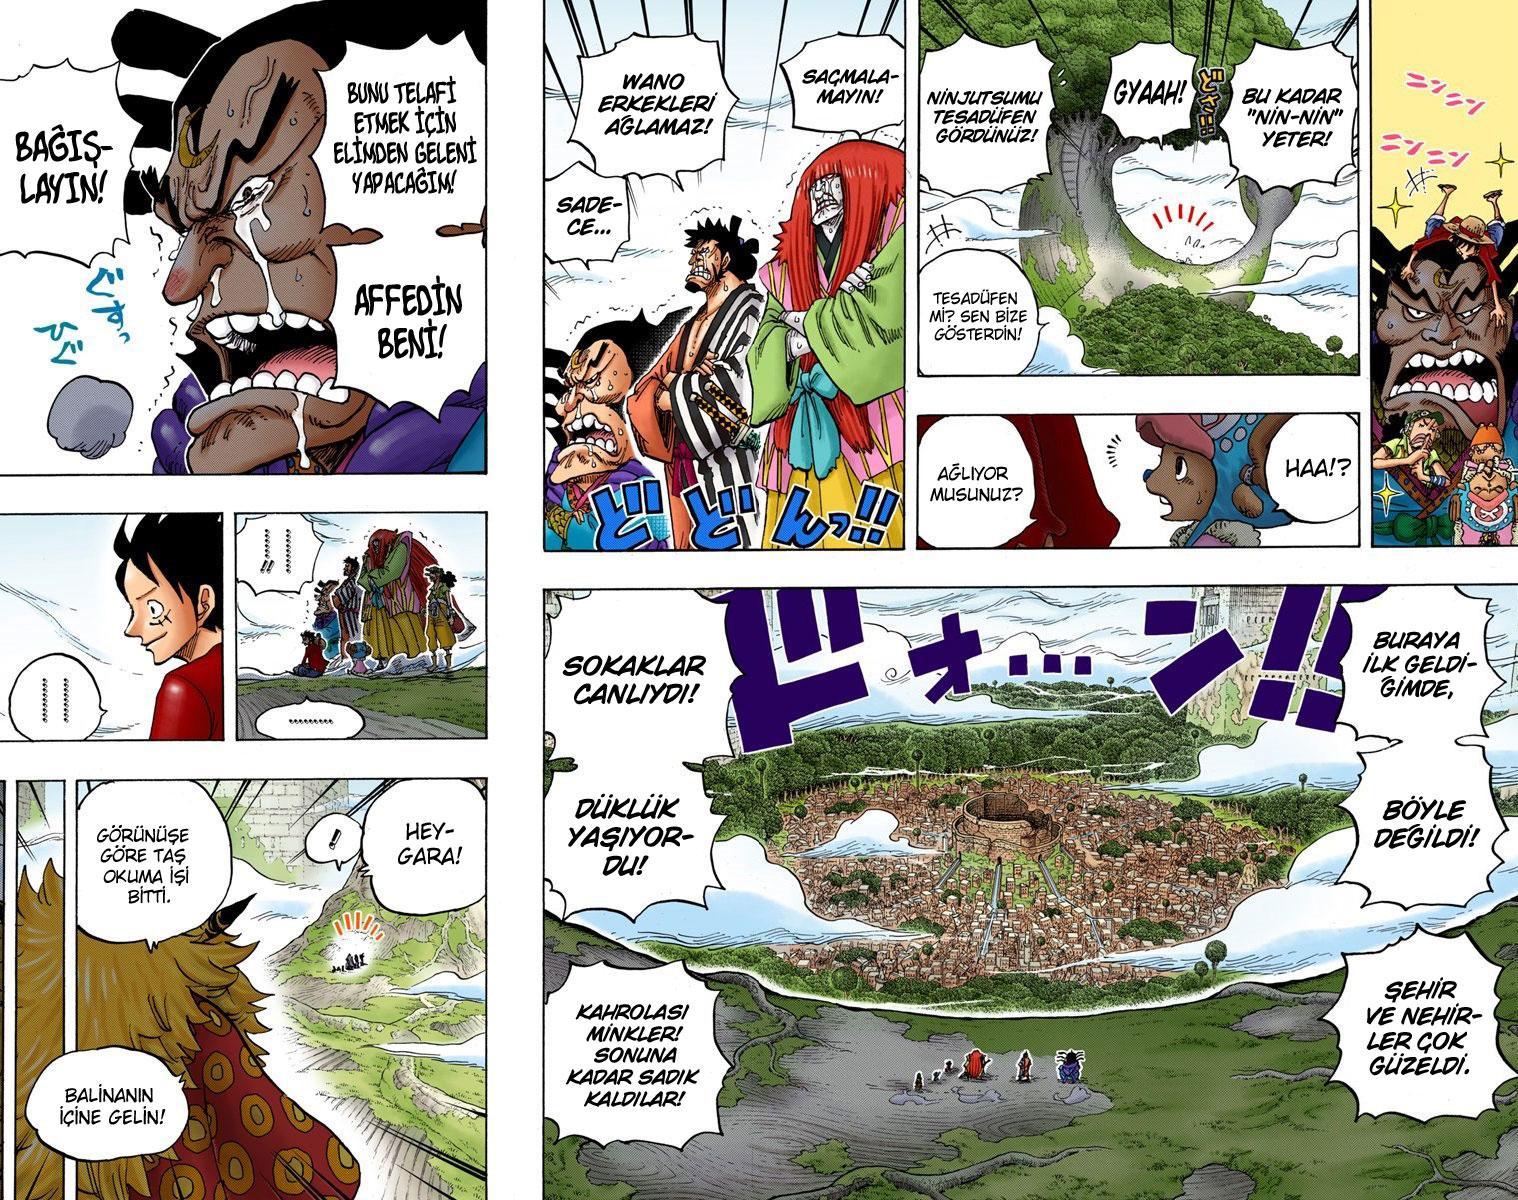 One Piece [Renkli] mangasının 818 bölümünün 3. sayfasını okuyorsunuz.